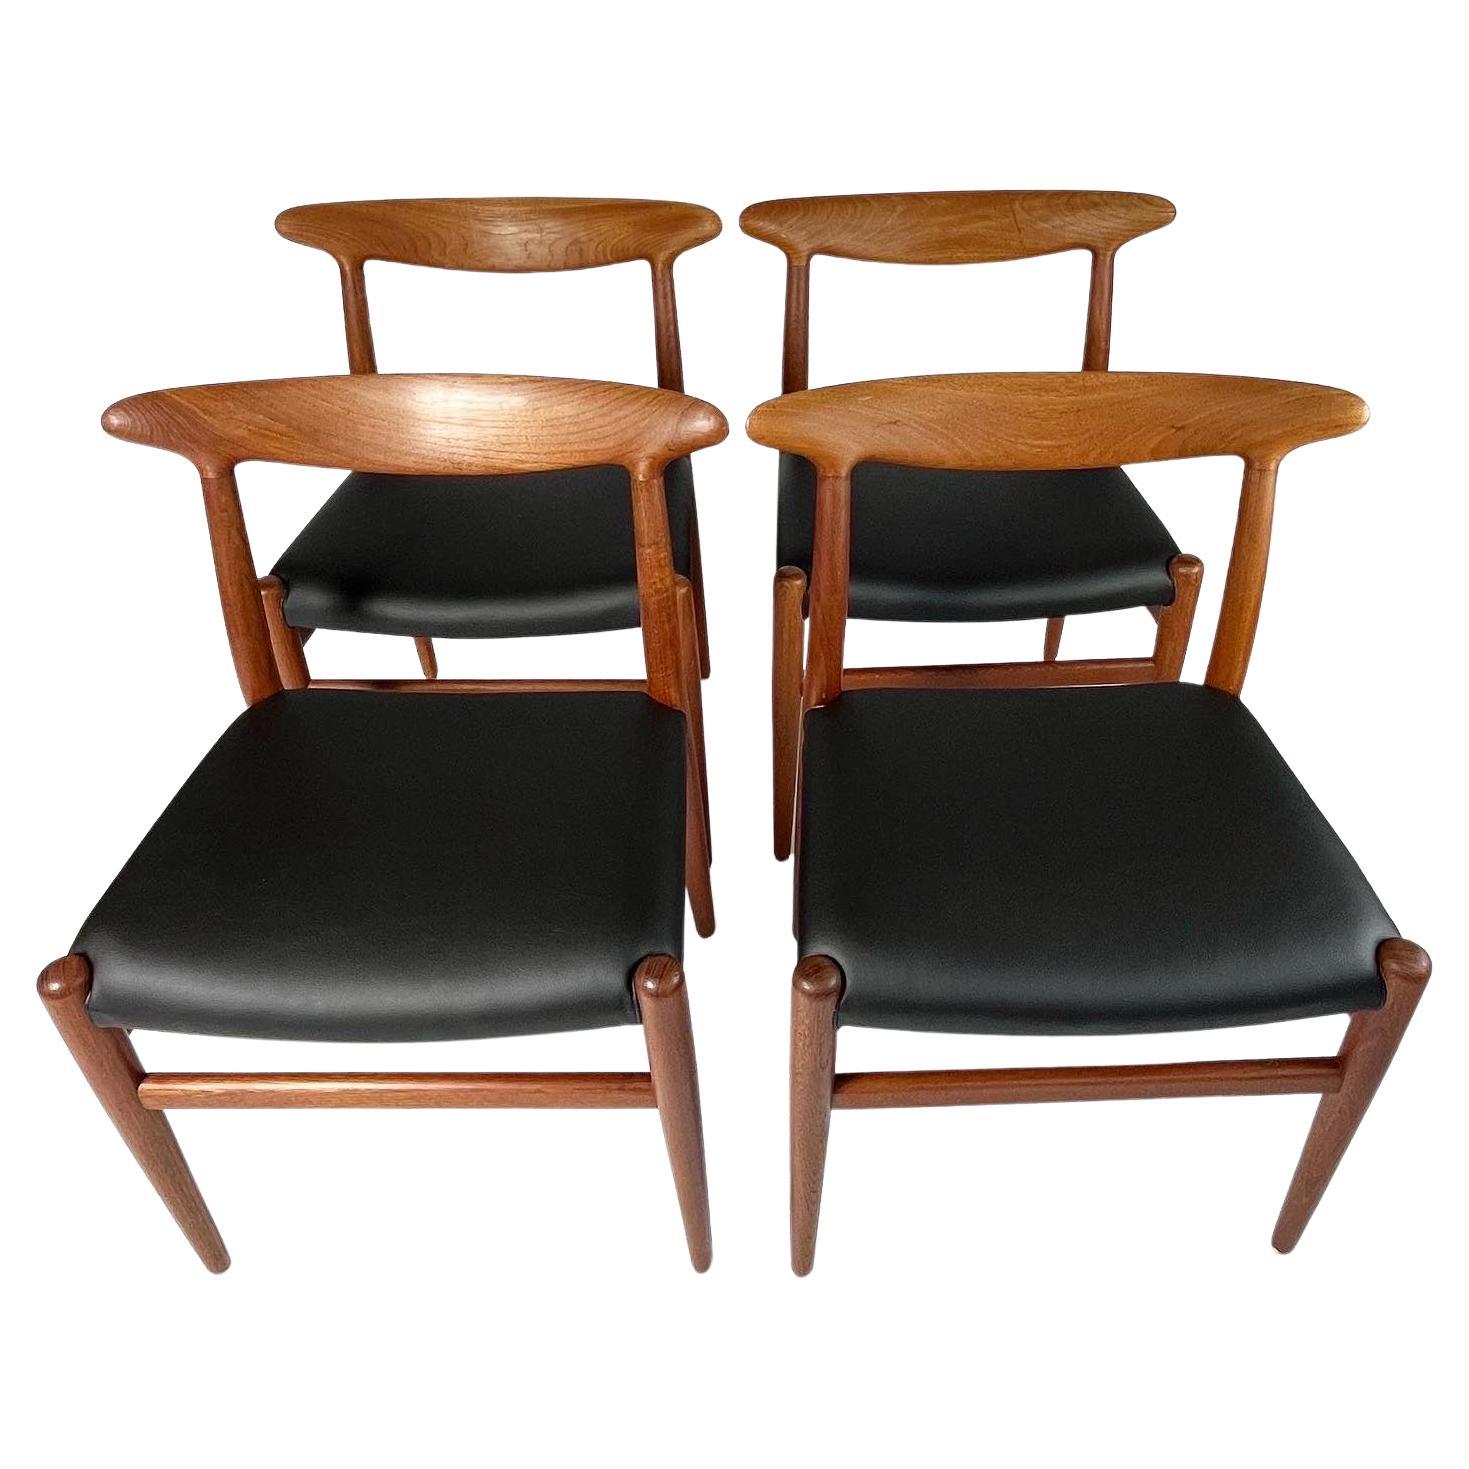 Ensemble de quatre chaises de salle à manger Hans J. Wegner, modèle W2, conçues en 1953 pour C.M. Madsens Fabrikant au Danemark.

Cadre en teck massif, nouveau revêtement en cuir de cactus noir primé de  Desserto, une belle alternative végétale et